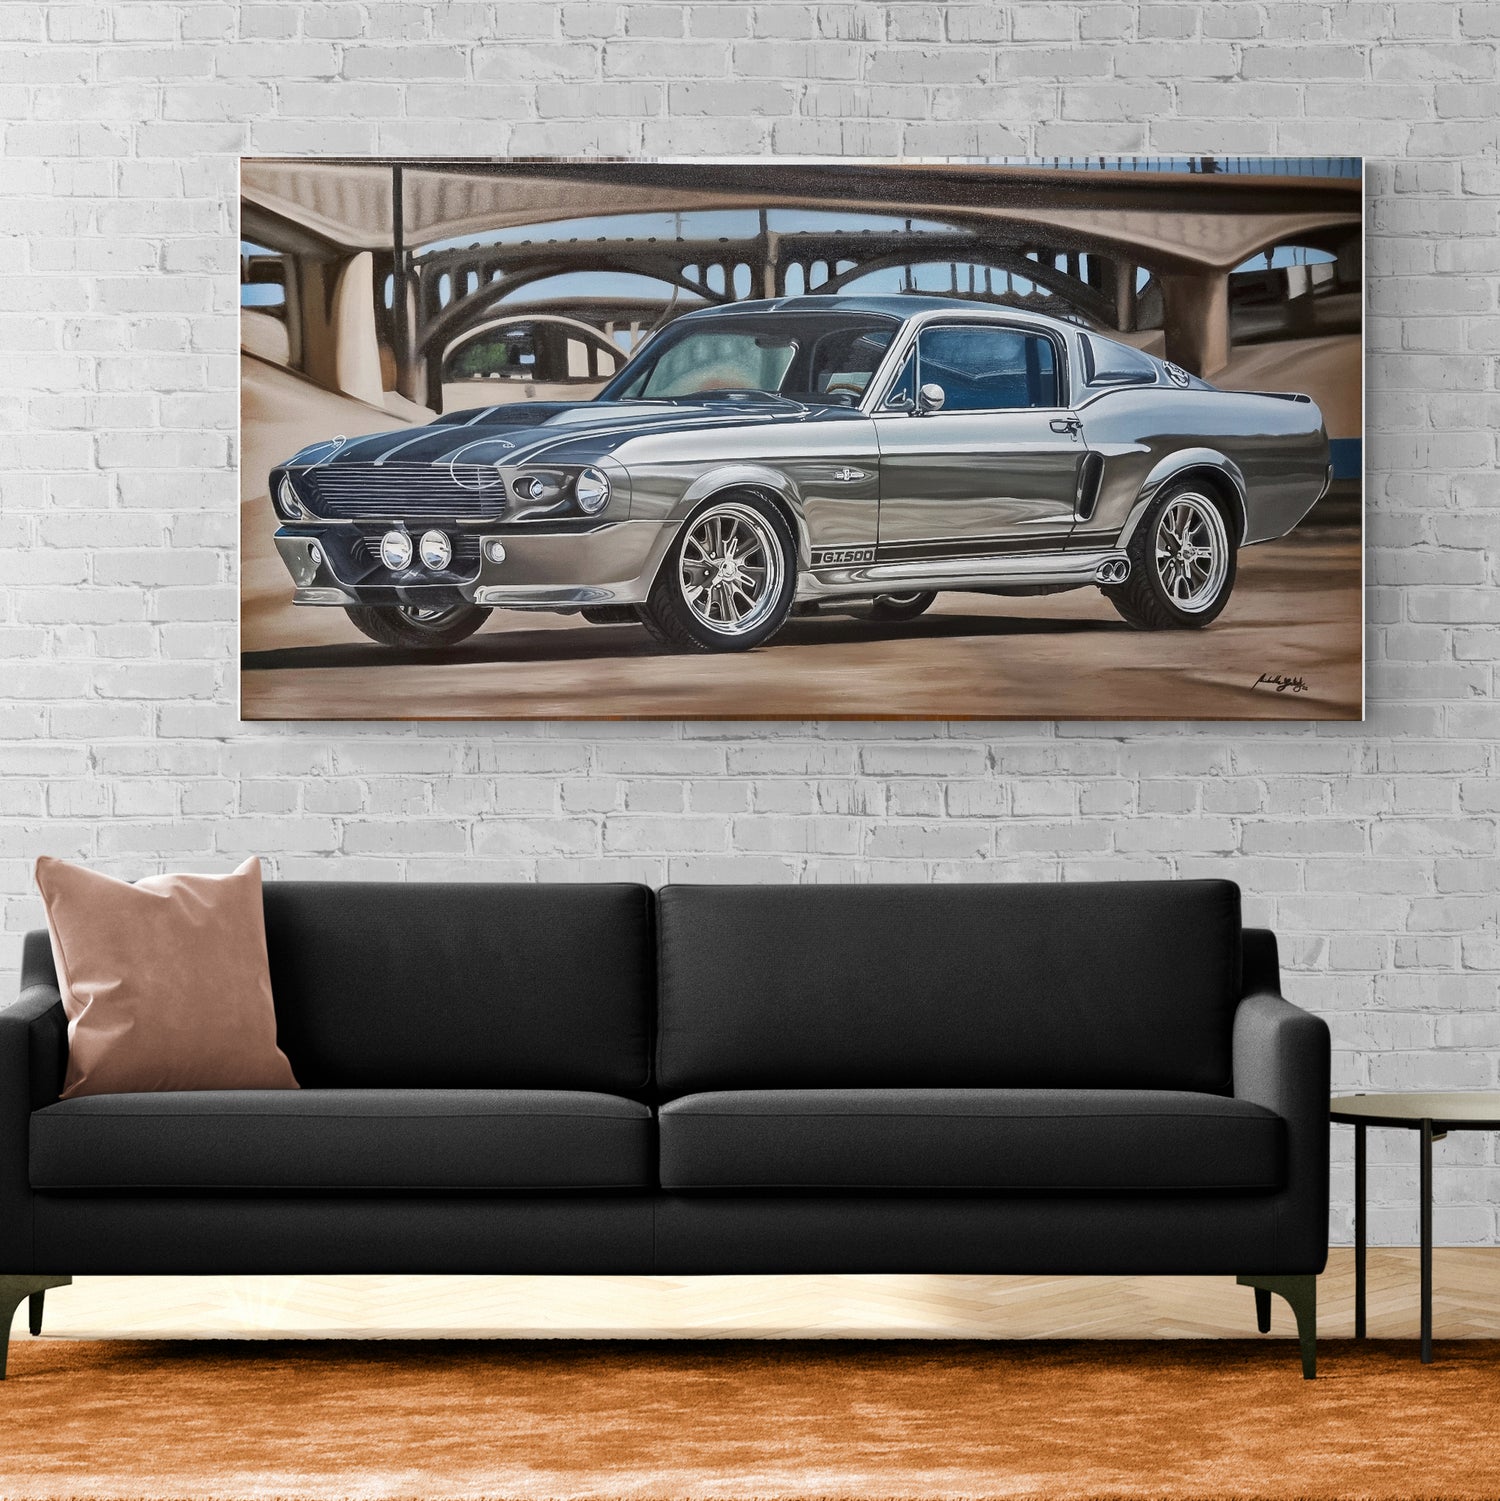 Wall Art Print Mustang GT Car, Gifts & Merchandise